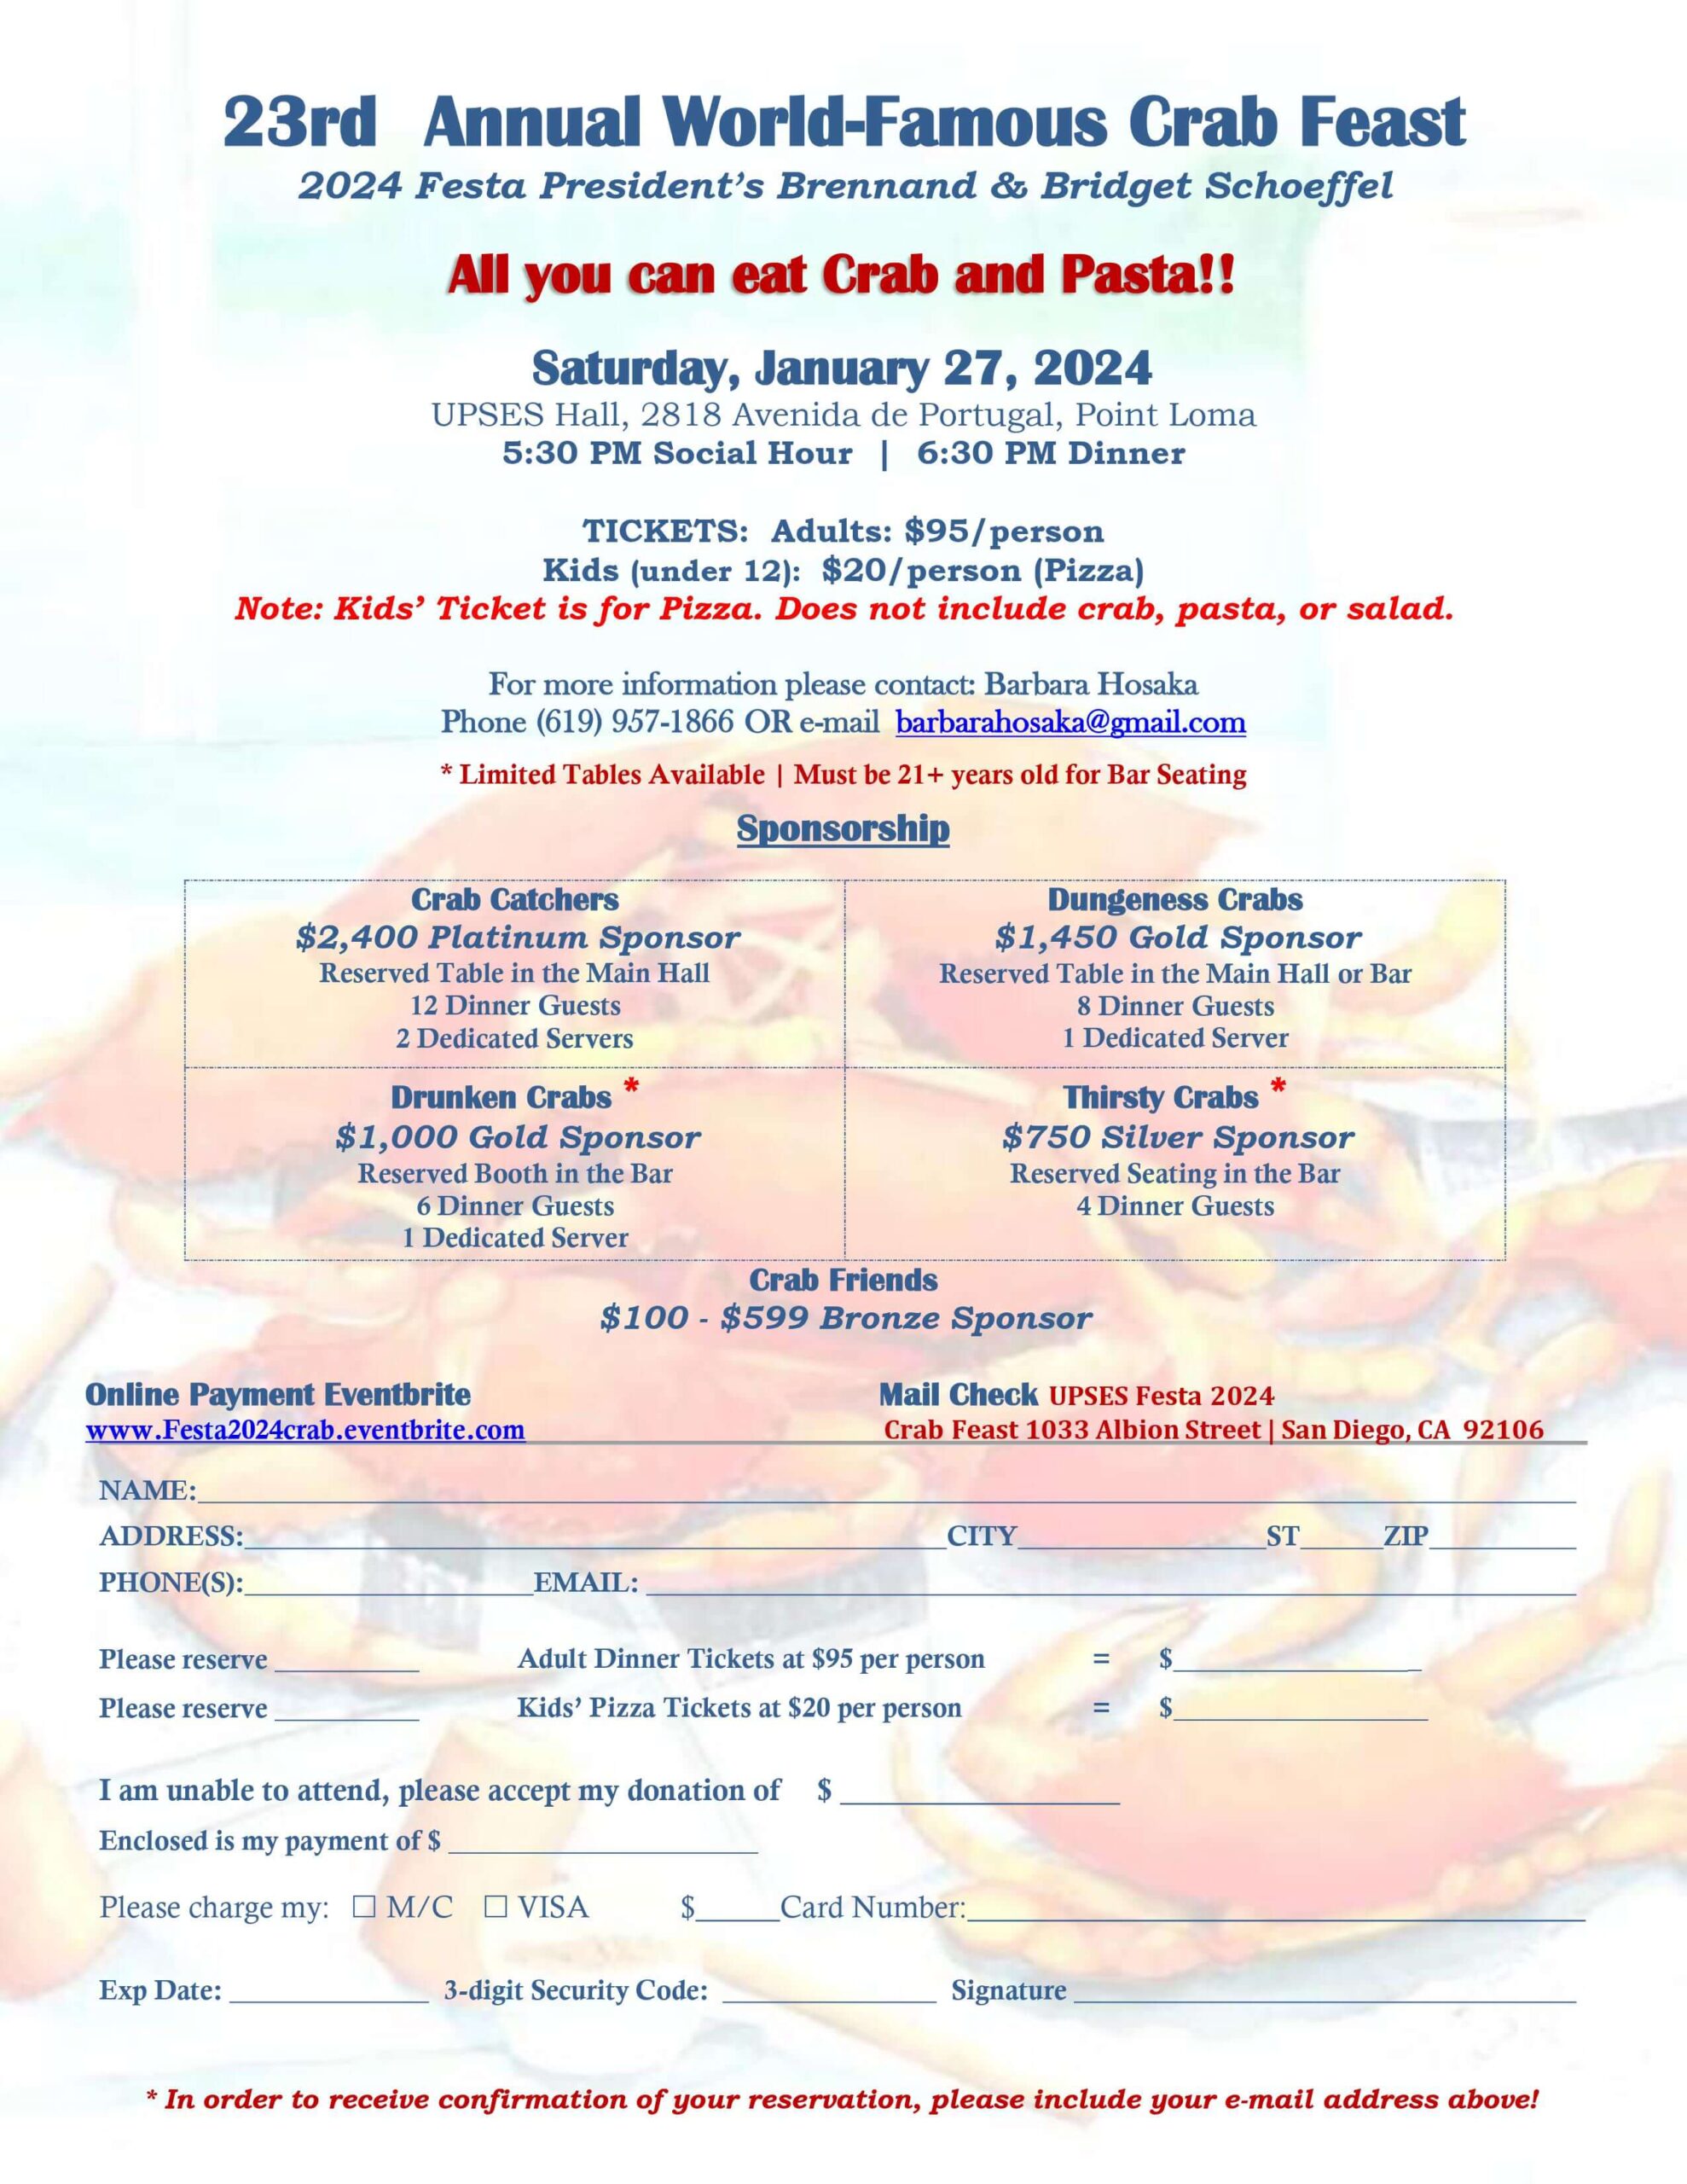 2024 Crab Feast Invitation